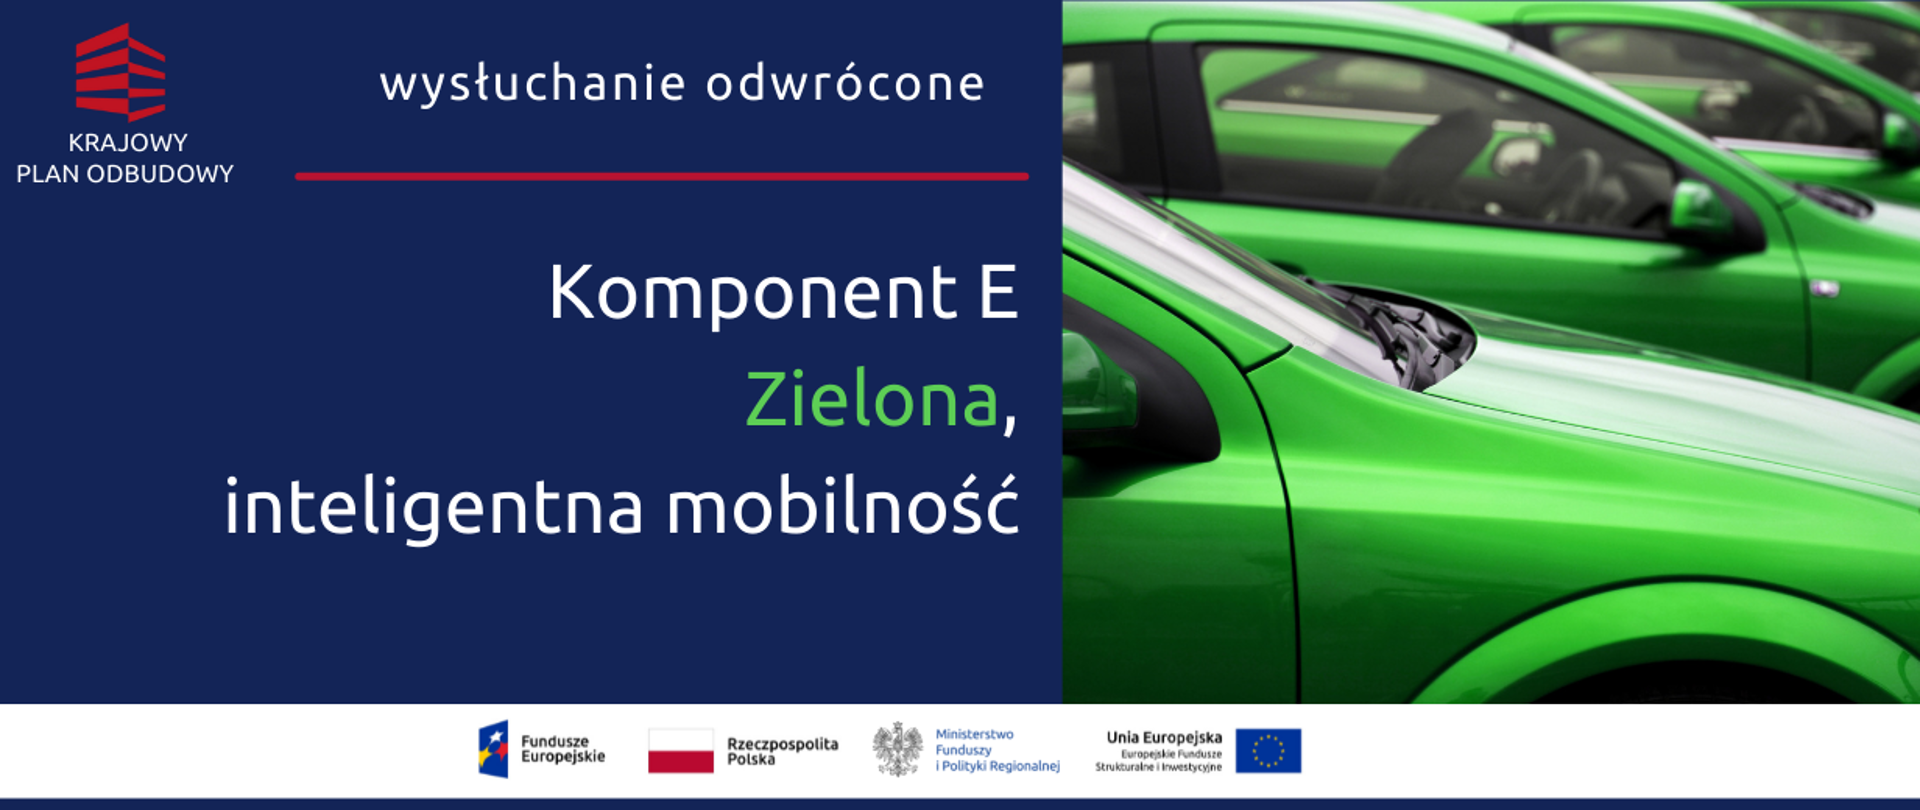 Na grafice napis: "Wysłuchanie odwrócone KPO Komponent E - Zielona, inteligentna mobilność oraz zdjęcie zielonych samochodów